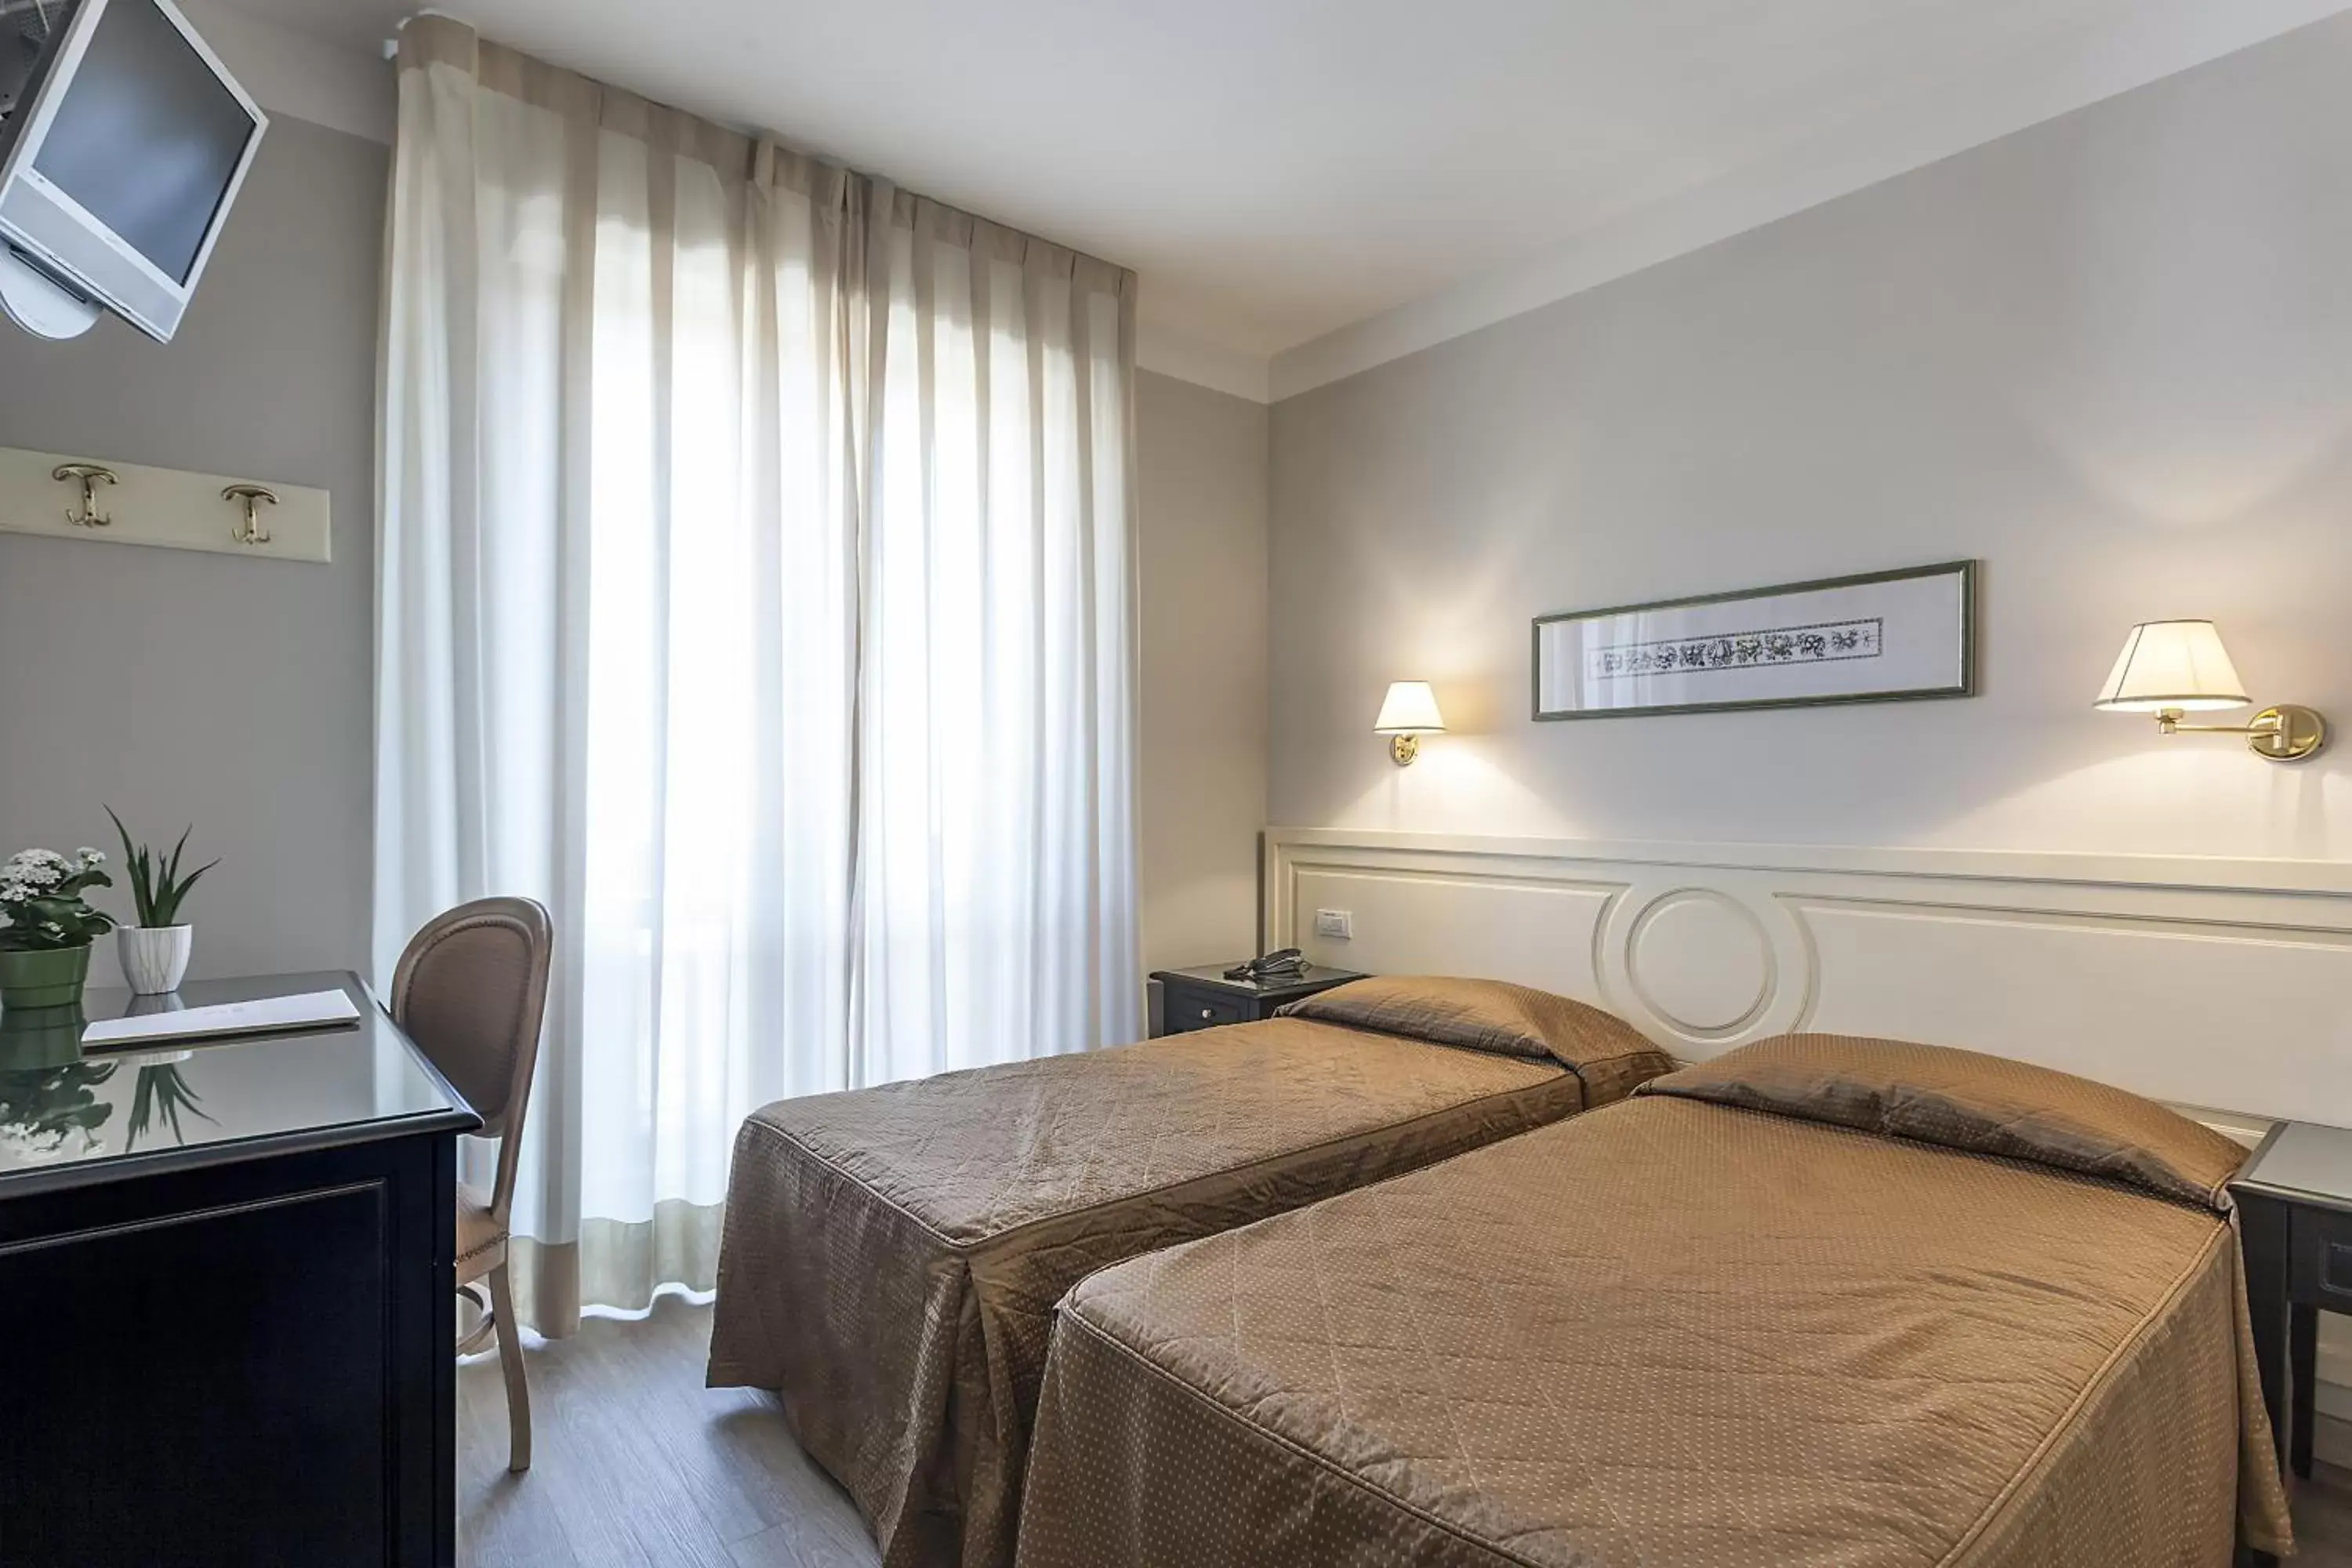 Bed in Grand Hotel Bonanno